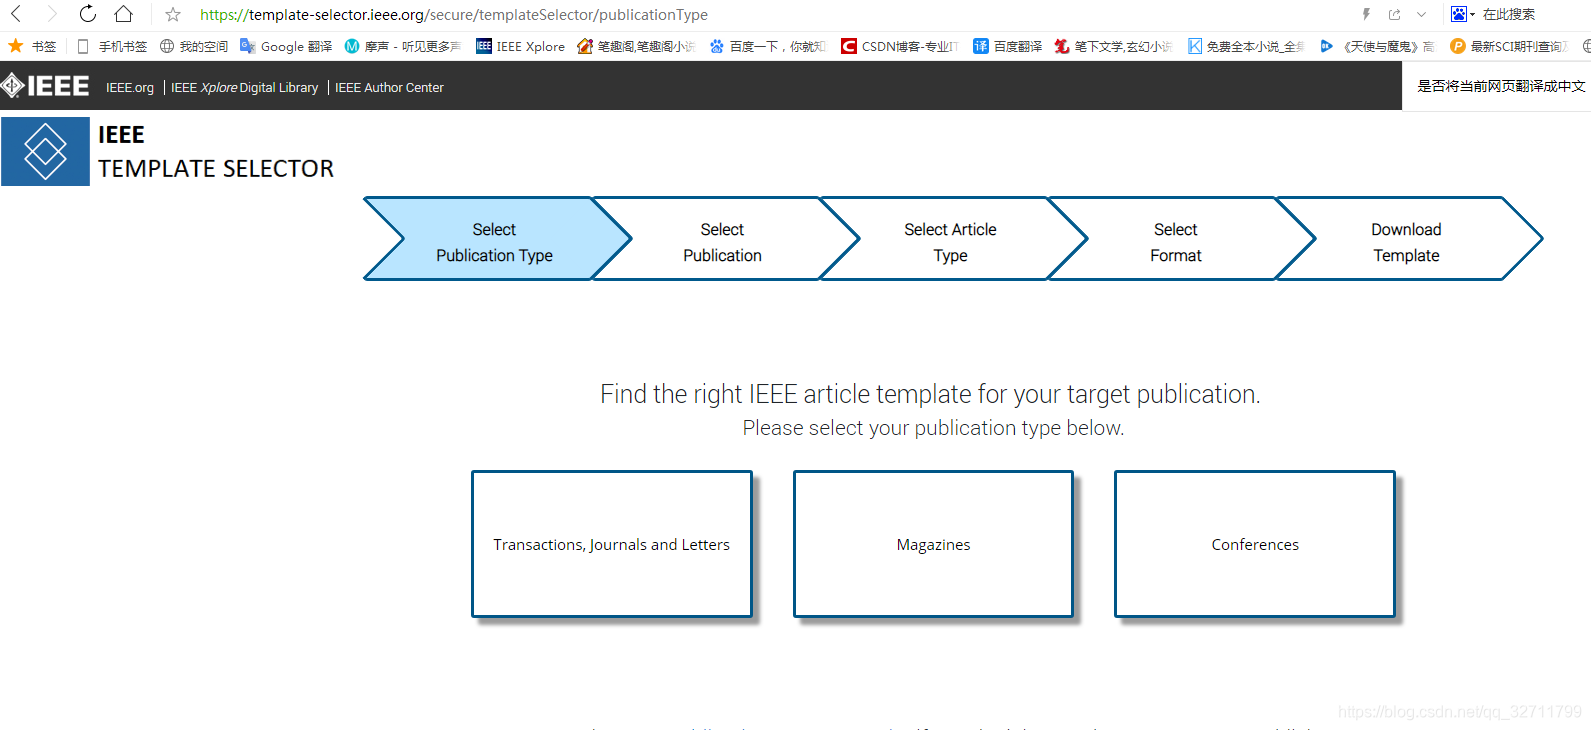 IEEE SCI期刊、会议模板下载_潇洒郎的博客CSDN博客_ieee 会议模板